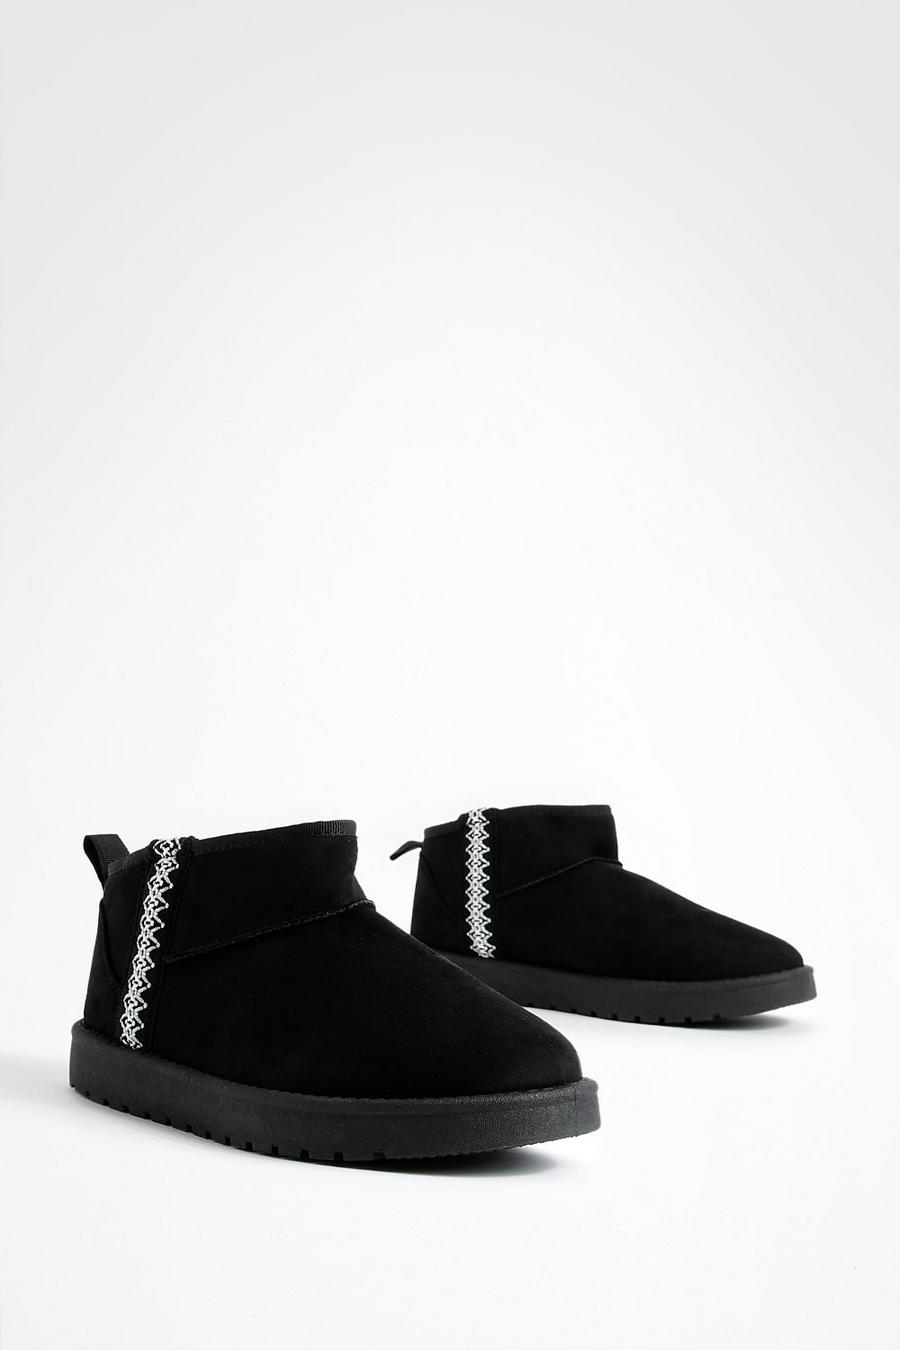 Botas cómodas bordadas, Black